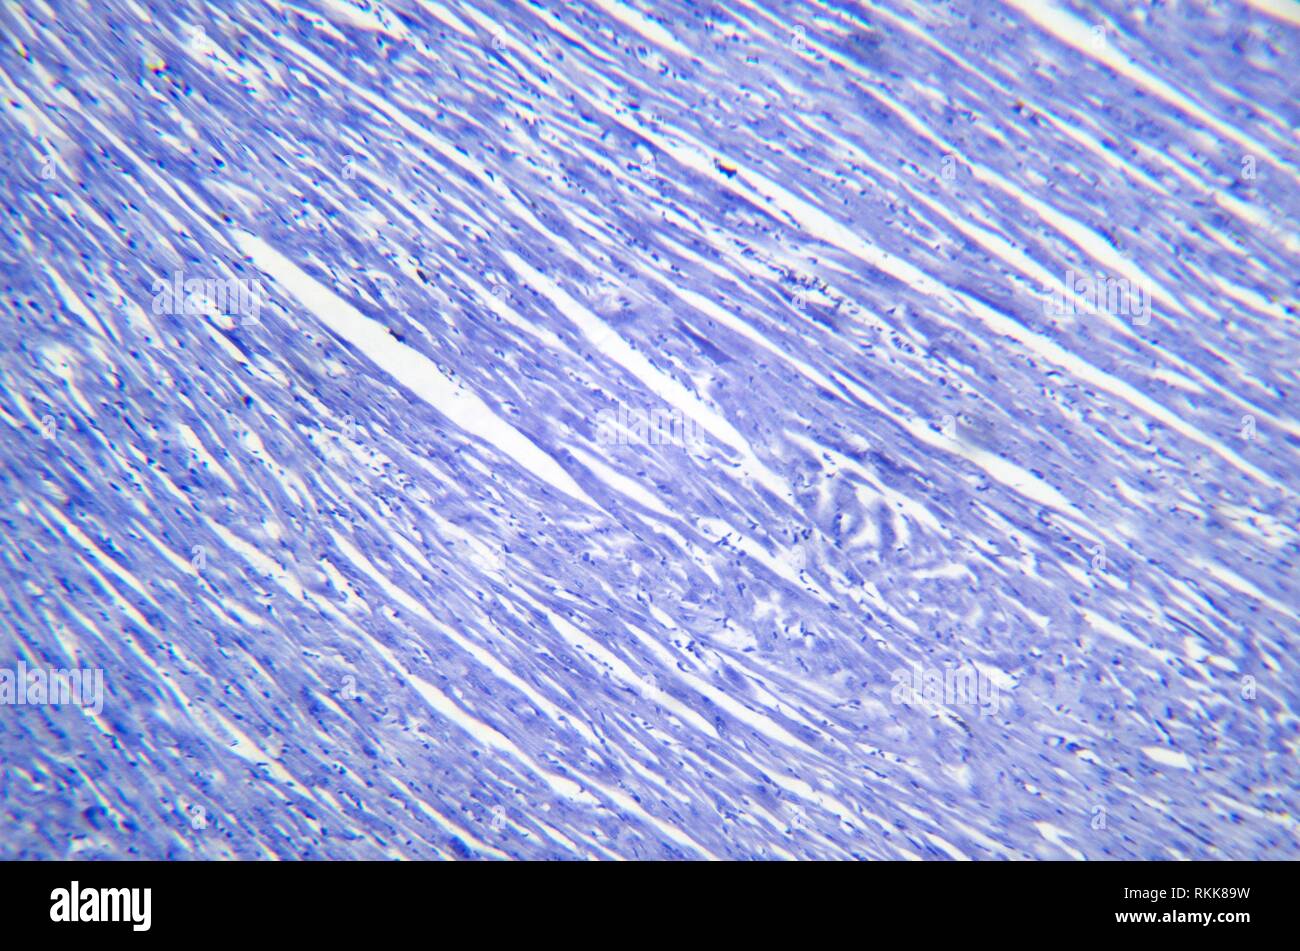 Fotografía de microscopía. Sección del músculo cardíaco. Foto de stock